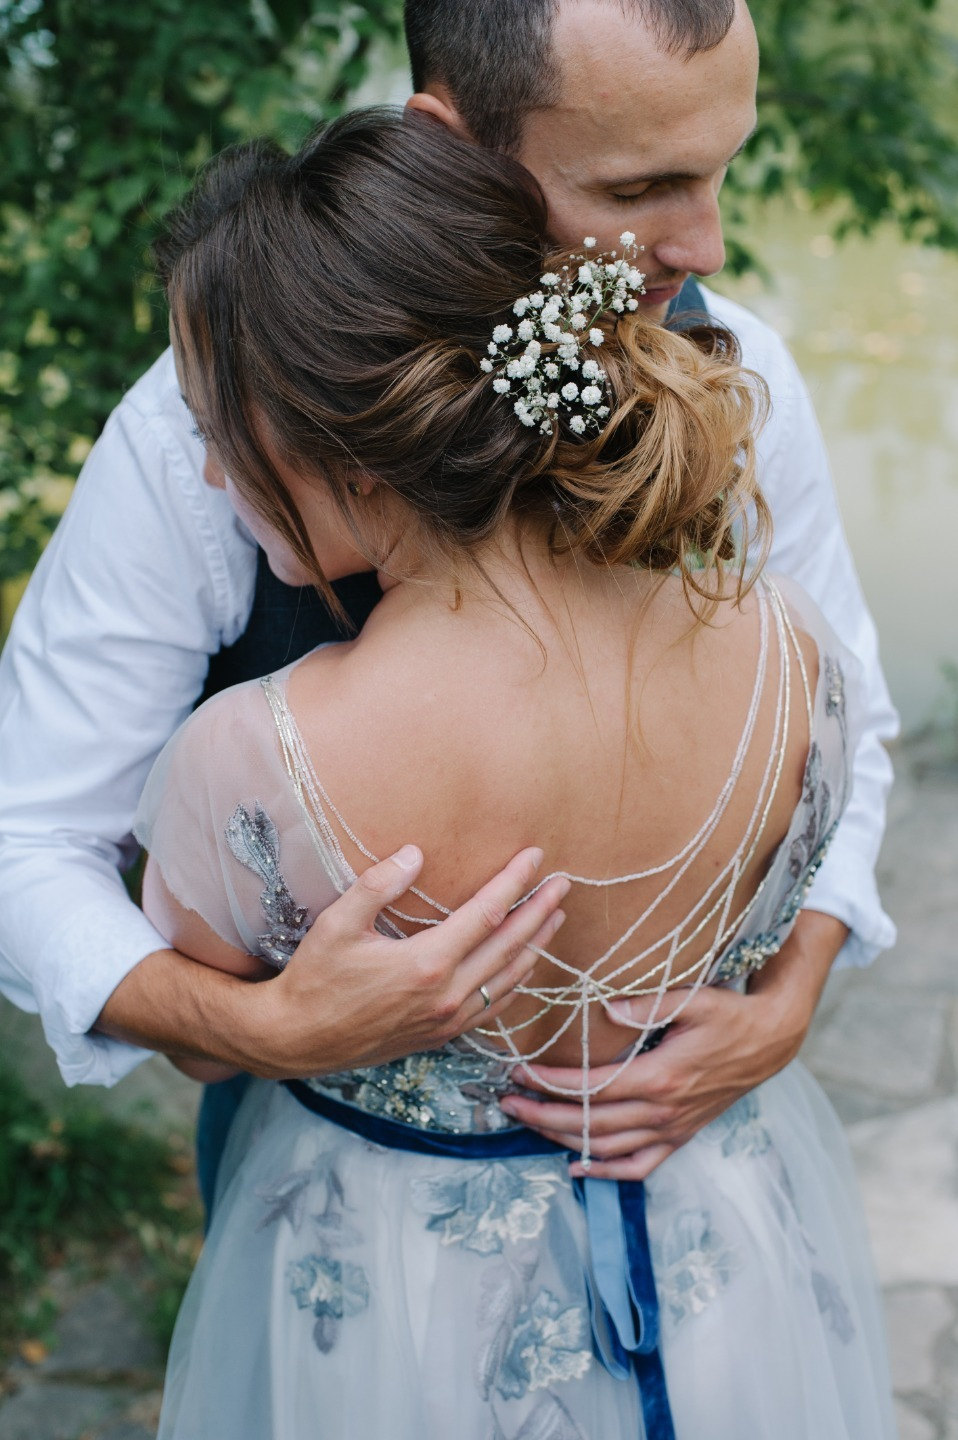 ФОТО ИЗ СТАТЬИ: Камерная свадьба в стиле рустик